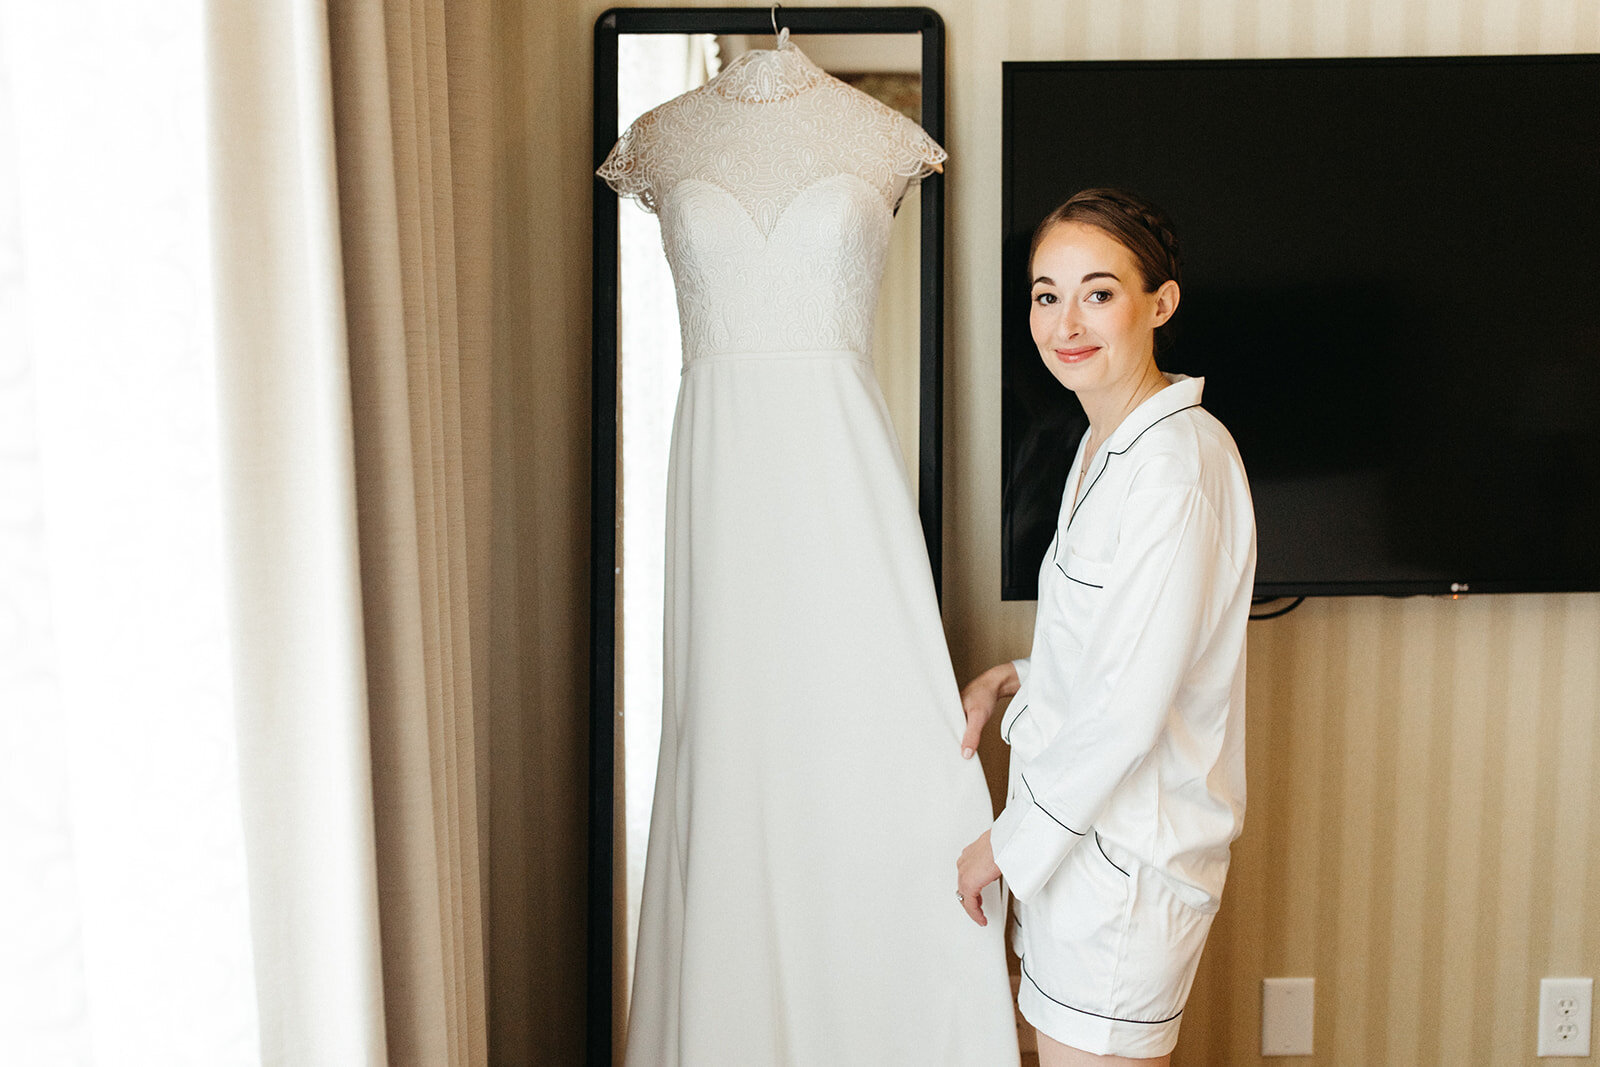 bride-getting-ready-wedding-dress